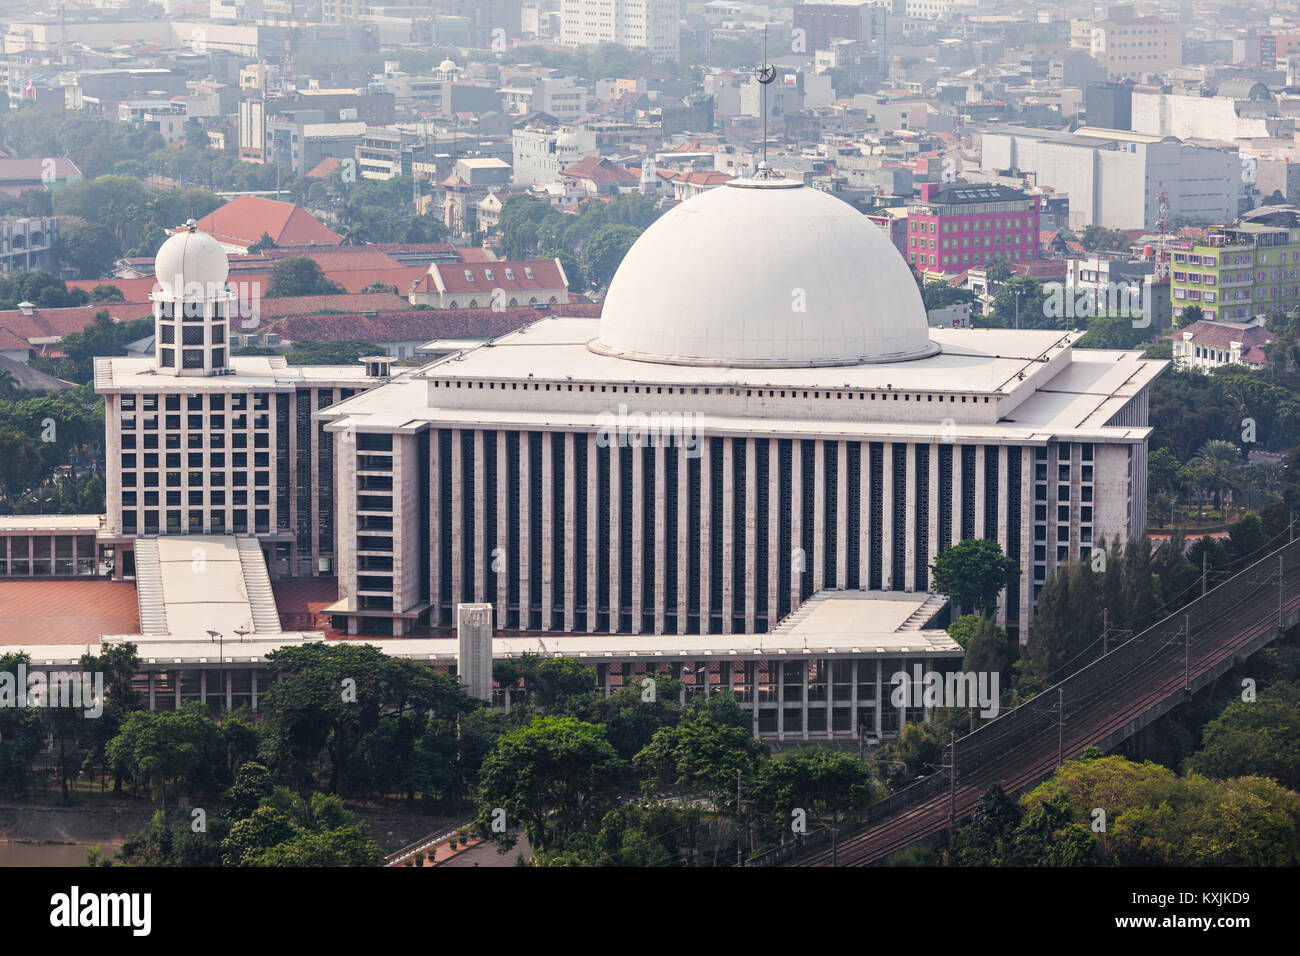 JAKARTA, INDONÉSIE - 21 octobre 2014 : Vue aérienne de la Mosquée Istiqlal. C'est la plus grande mosquée d'Asie du sud-est. Banque D'Images